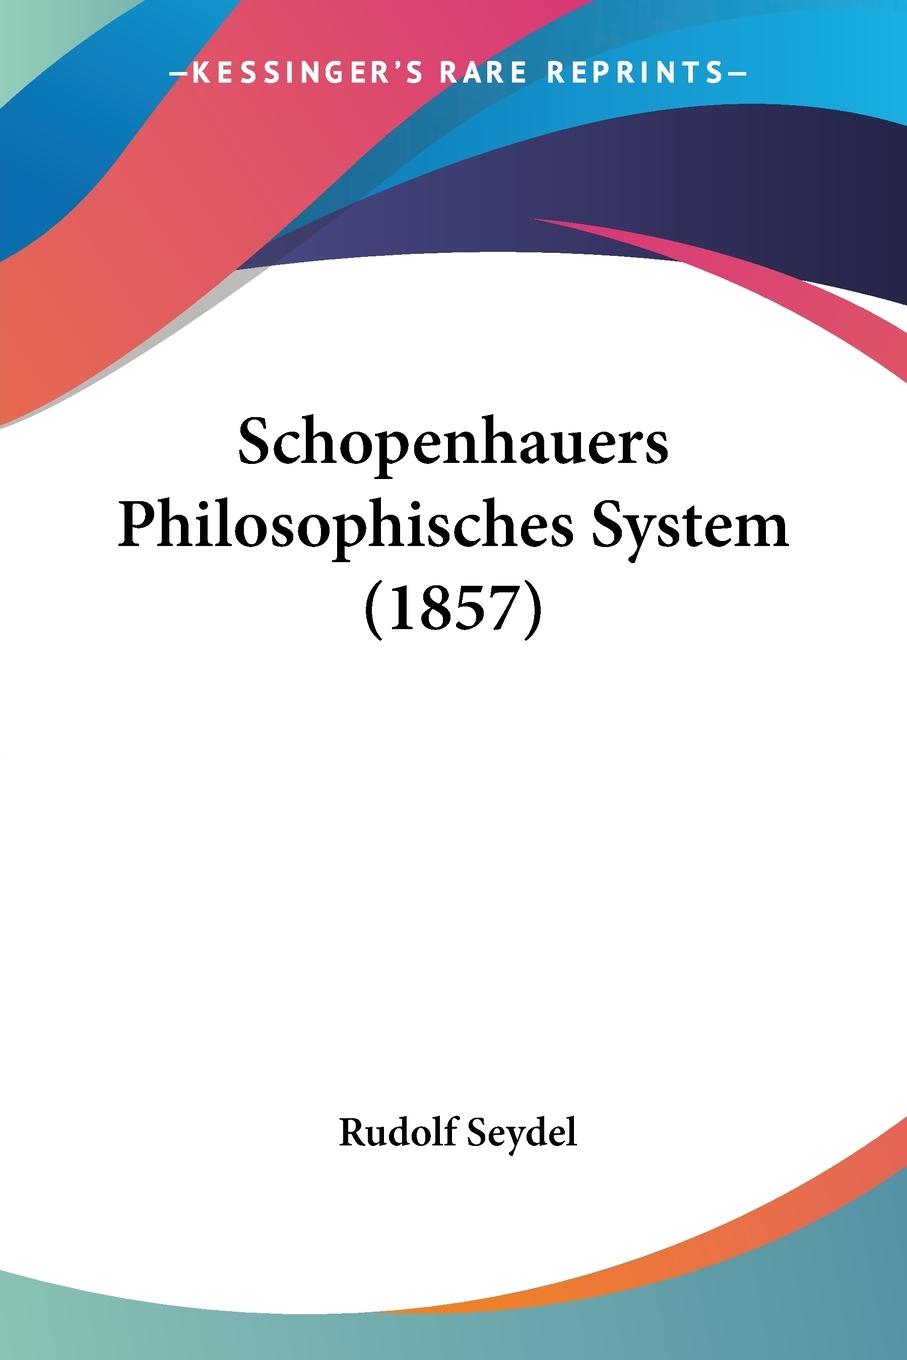 Schopenhauers Philosophisches System (1857) - Seydel, Rudolf